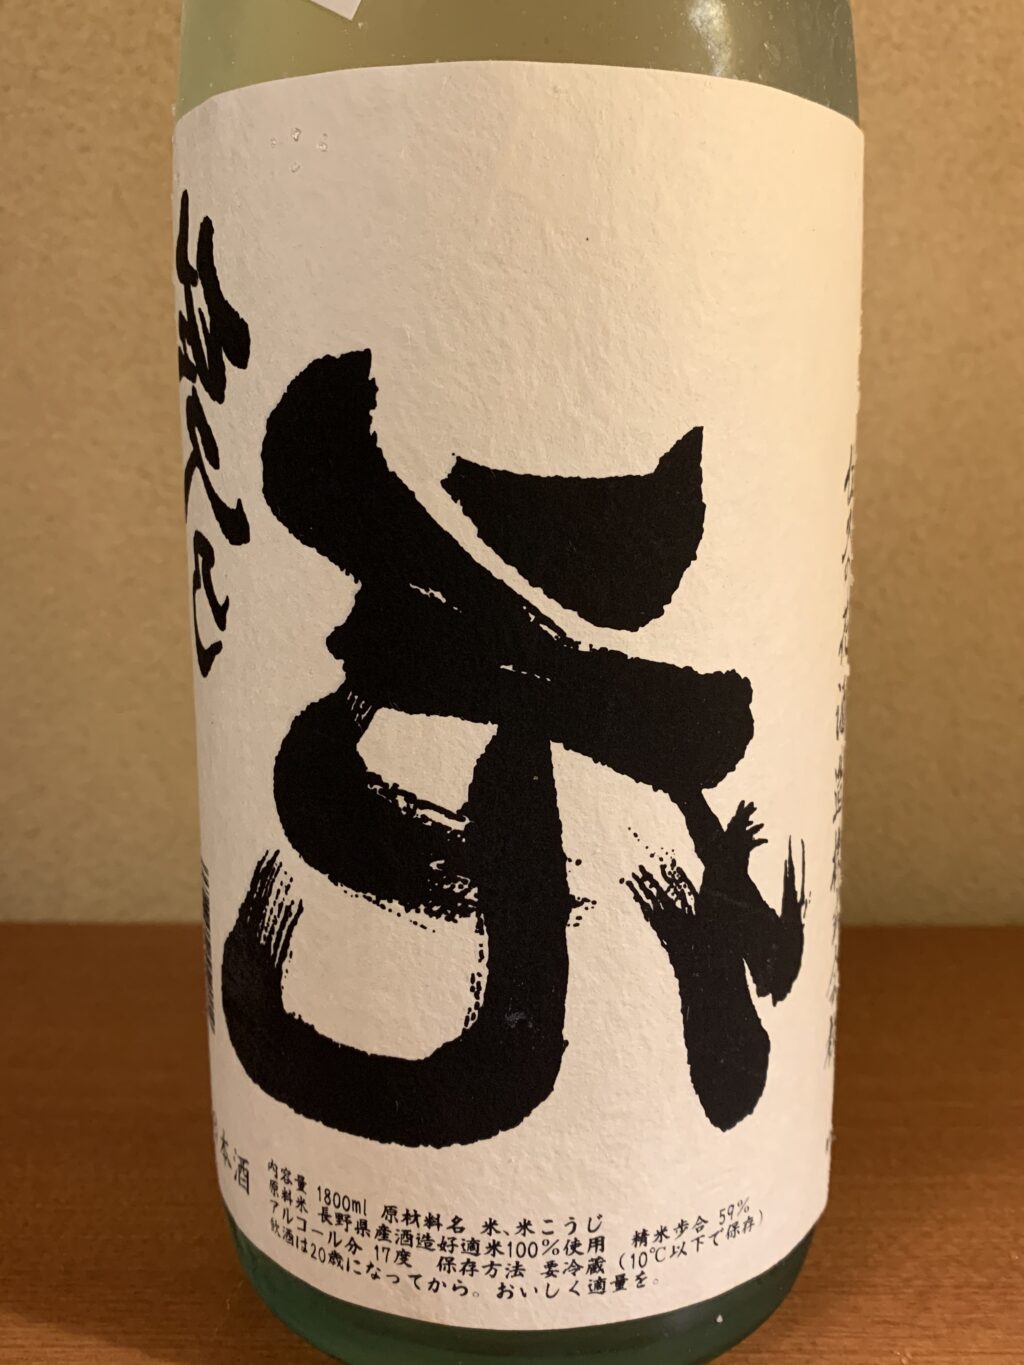 長野の日本酒『裏佐久乃花 夏の直汲み』はピチピチ感と華やかな香り